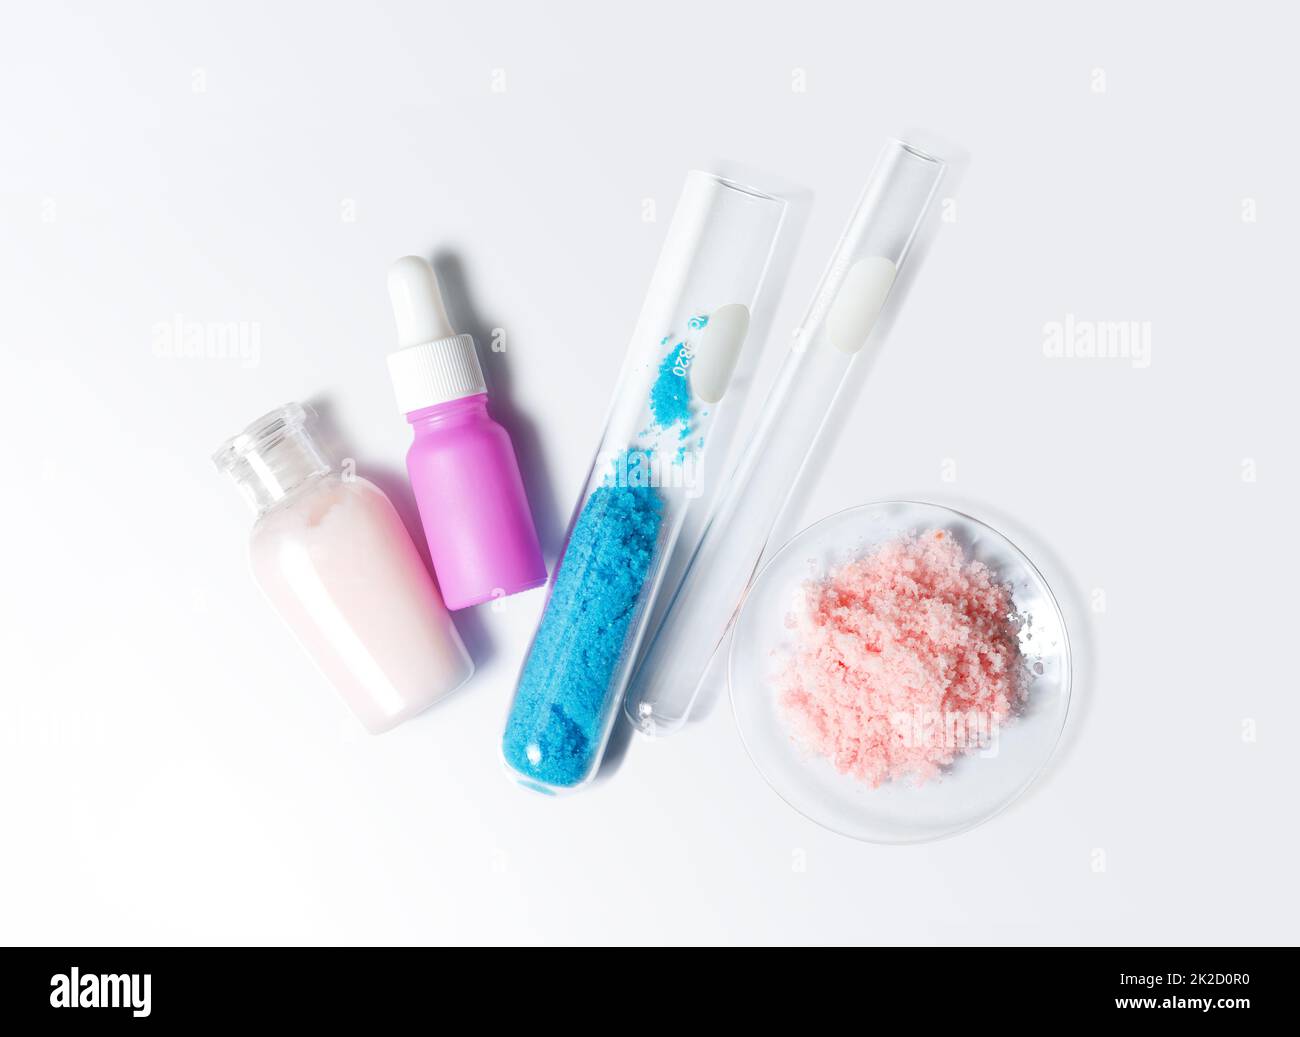 Pflegecreme, Serum, Kupfer(II)-Sulfat im Reagenzglas und himalaya-Rosa-Salz. Chemikalien für die Schönheitspflege auf weißem Labortisch. (Draufsicht) Stockfoto